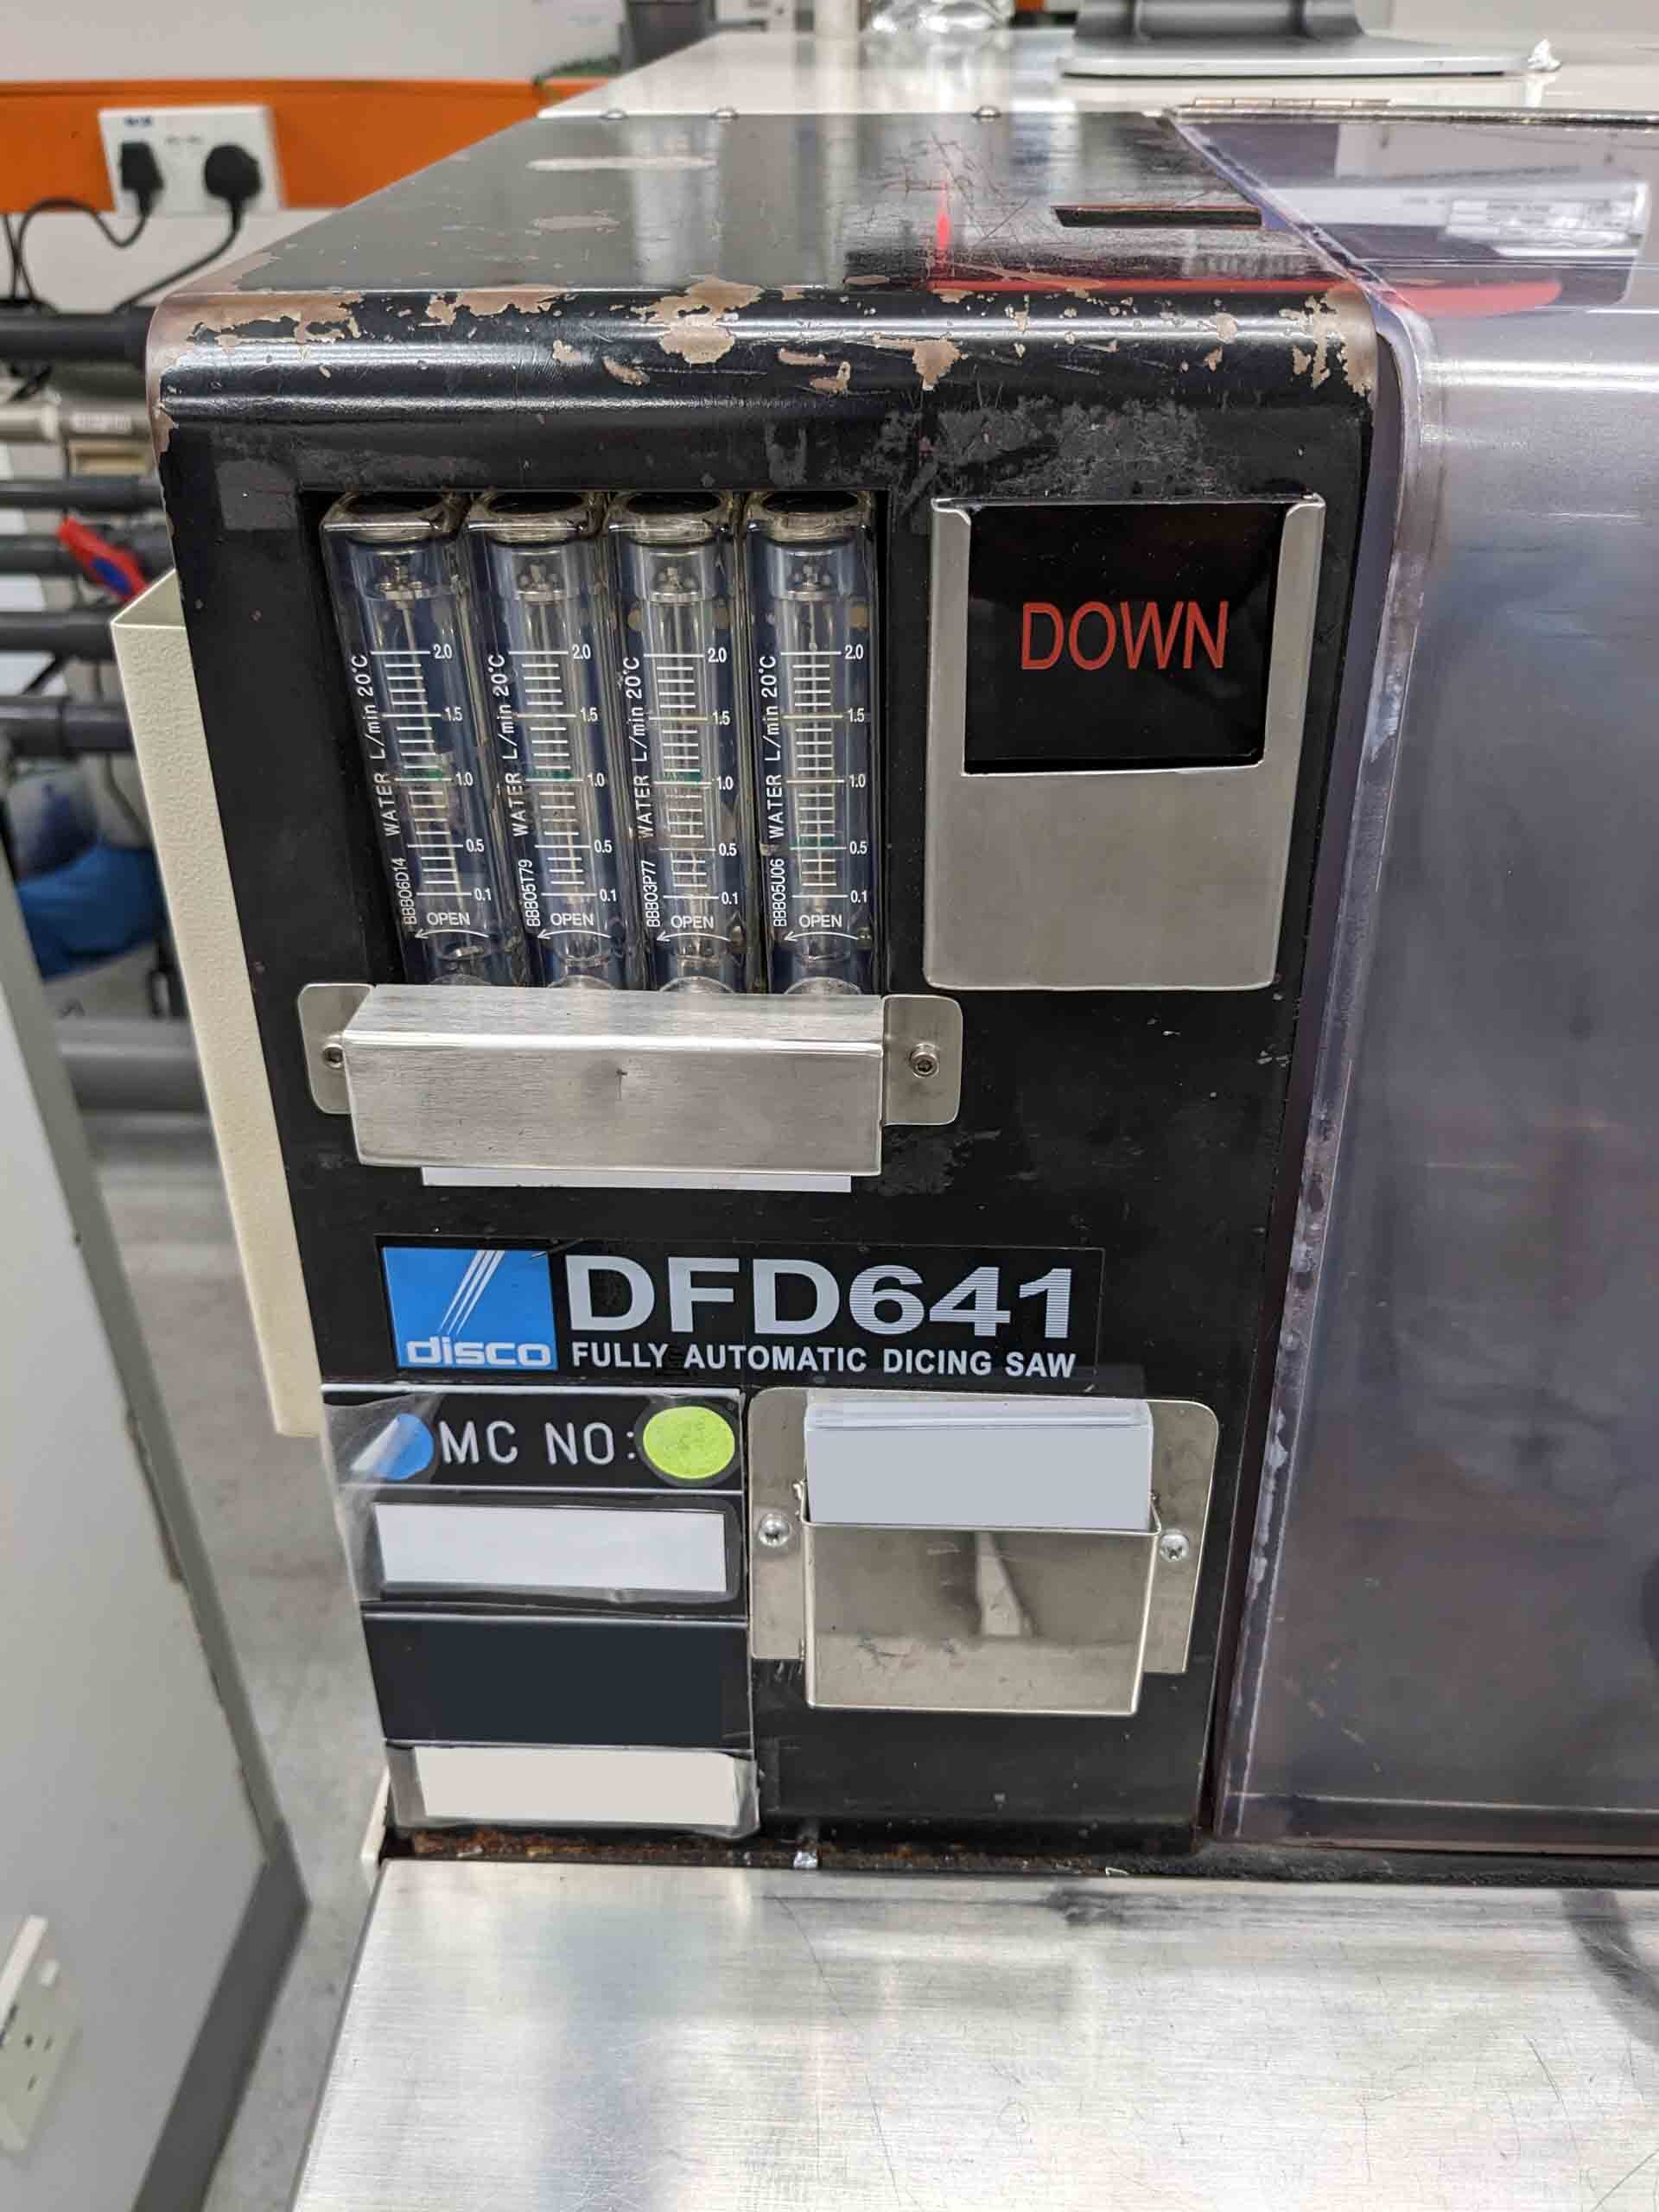 圖為 已使用的 DISCO DFD 641 待售